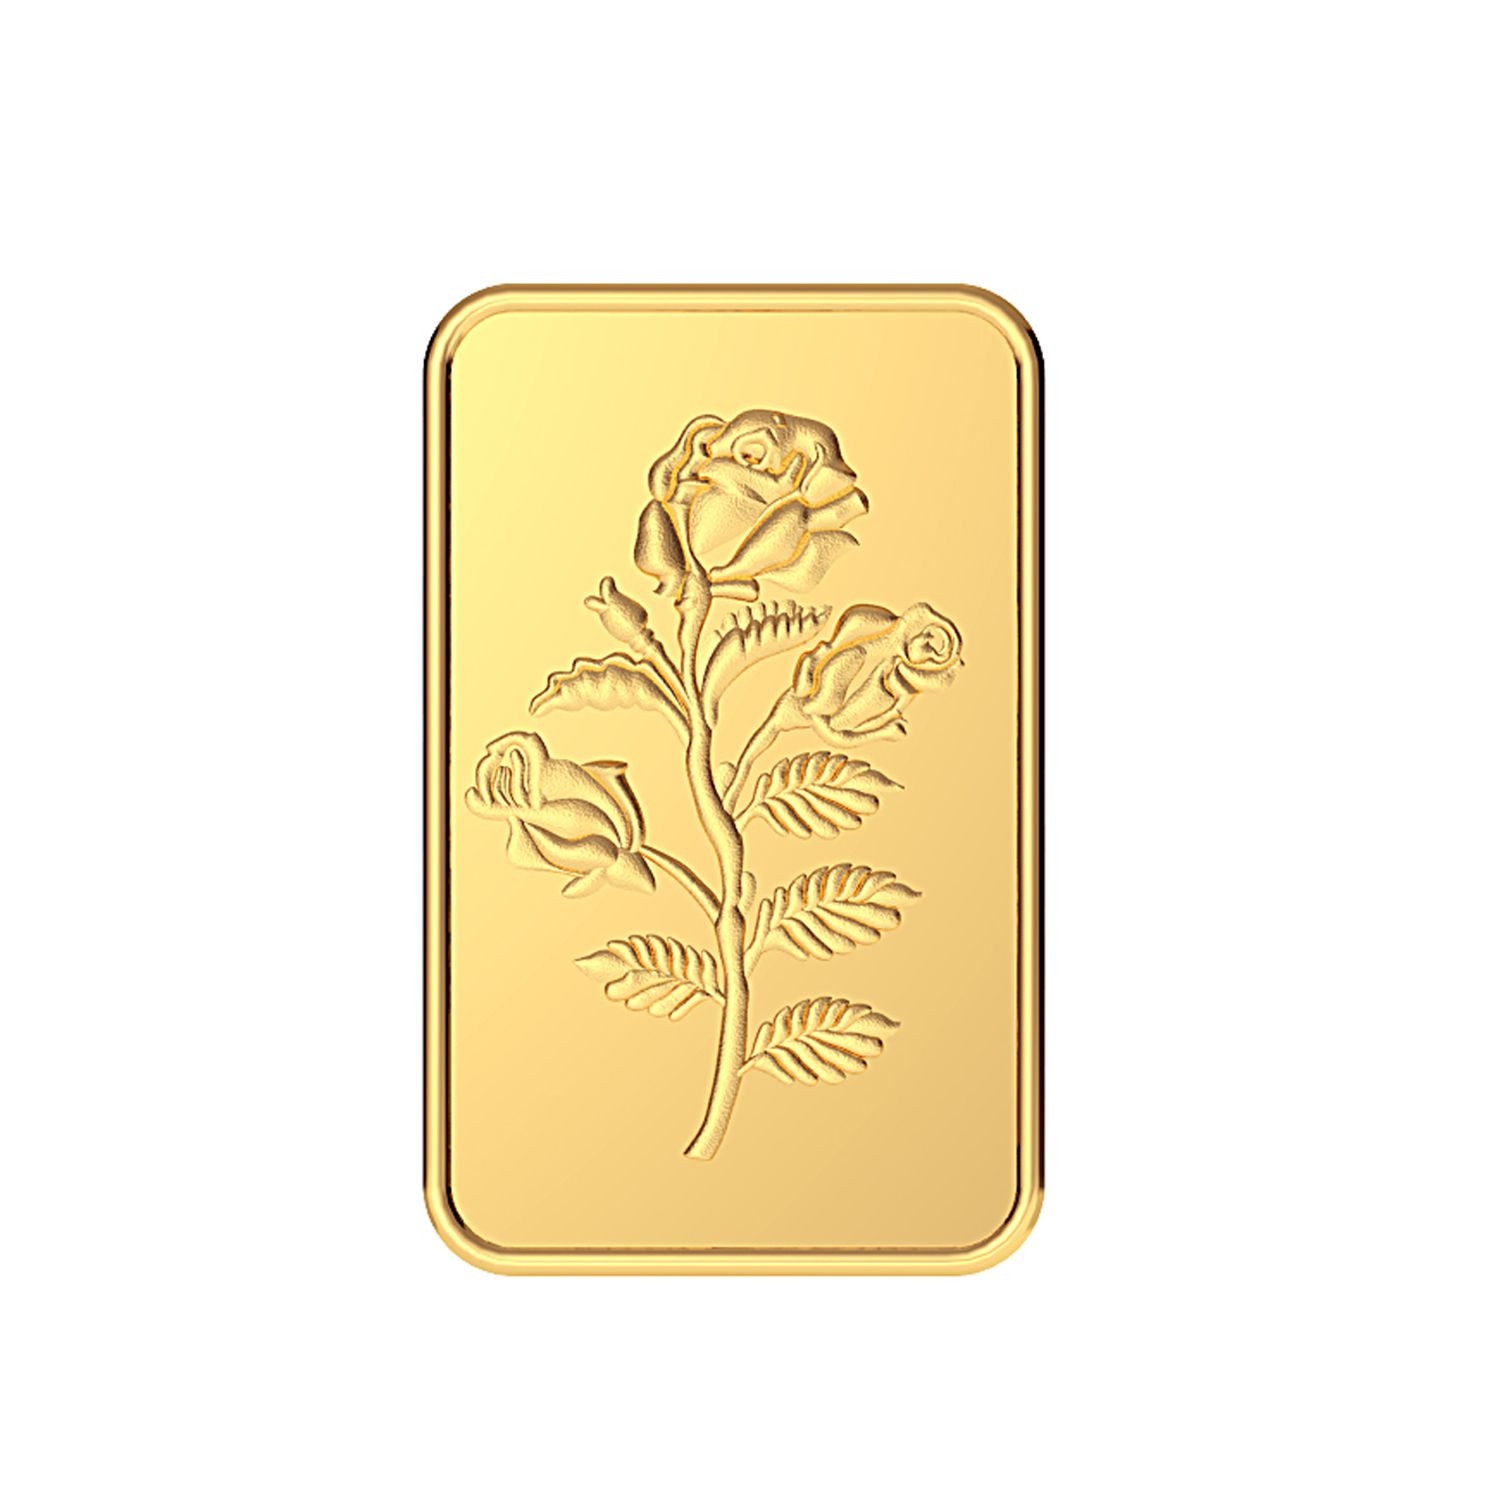 Malabar Gold 24k 999 Purity 1g Rose Bar